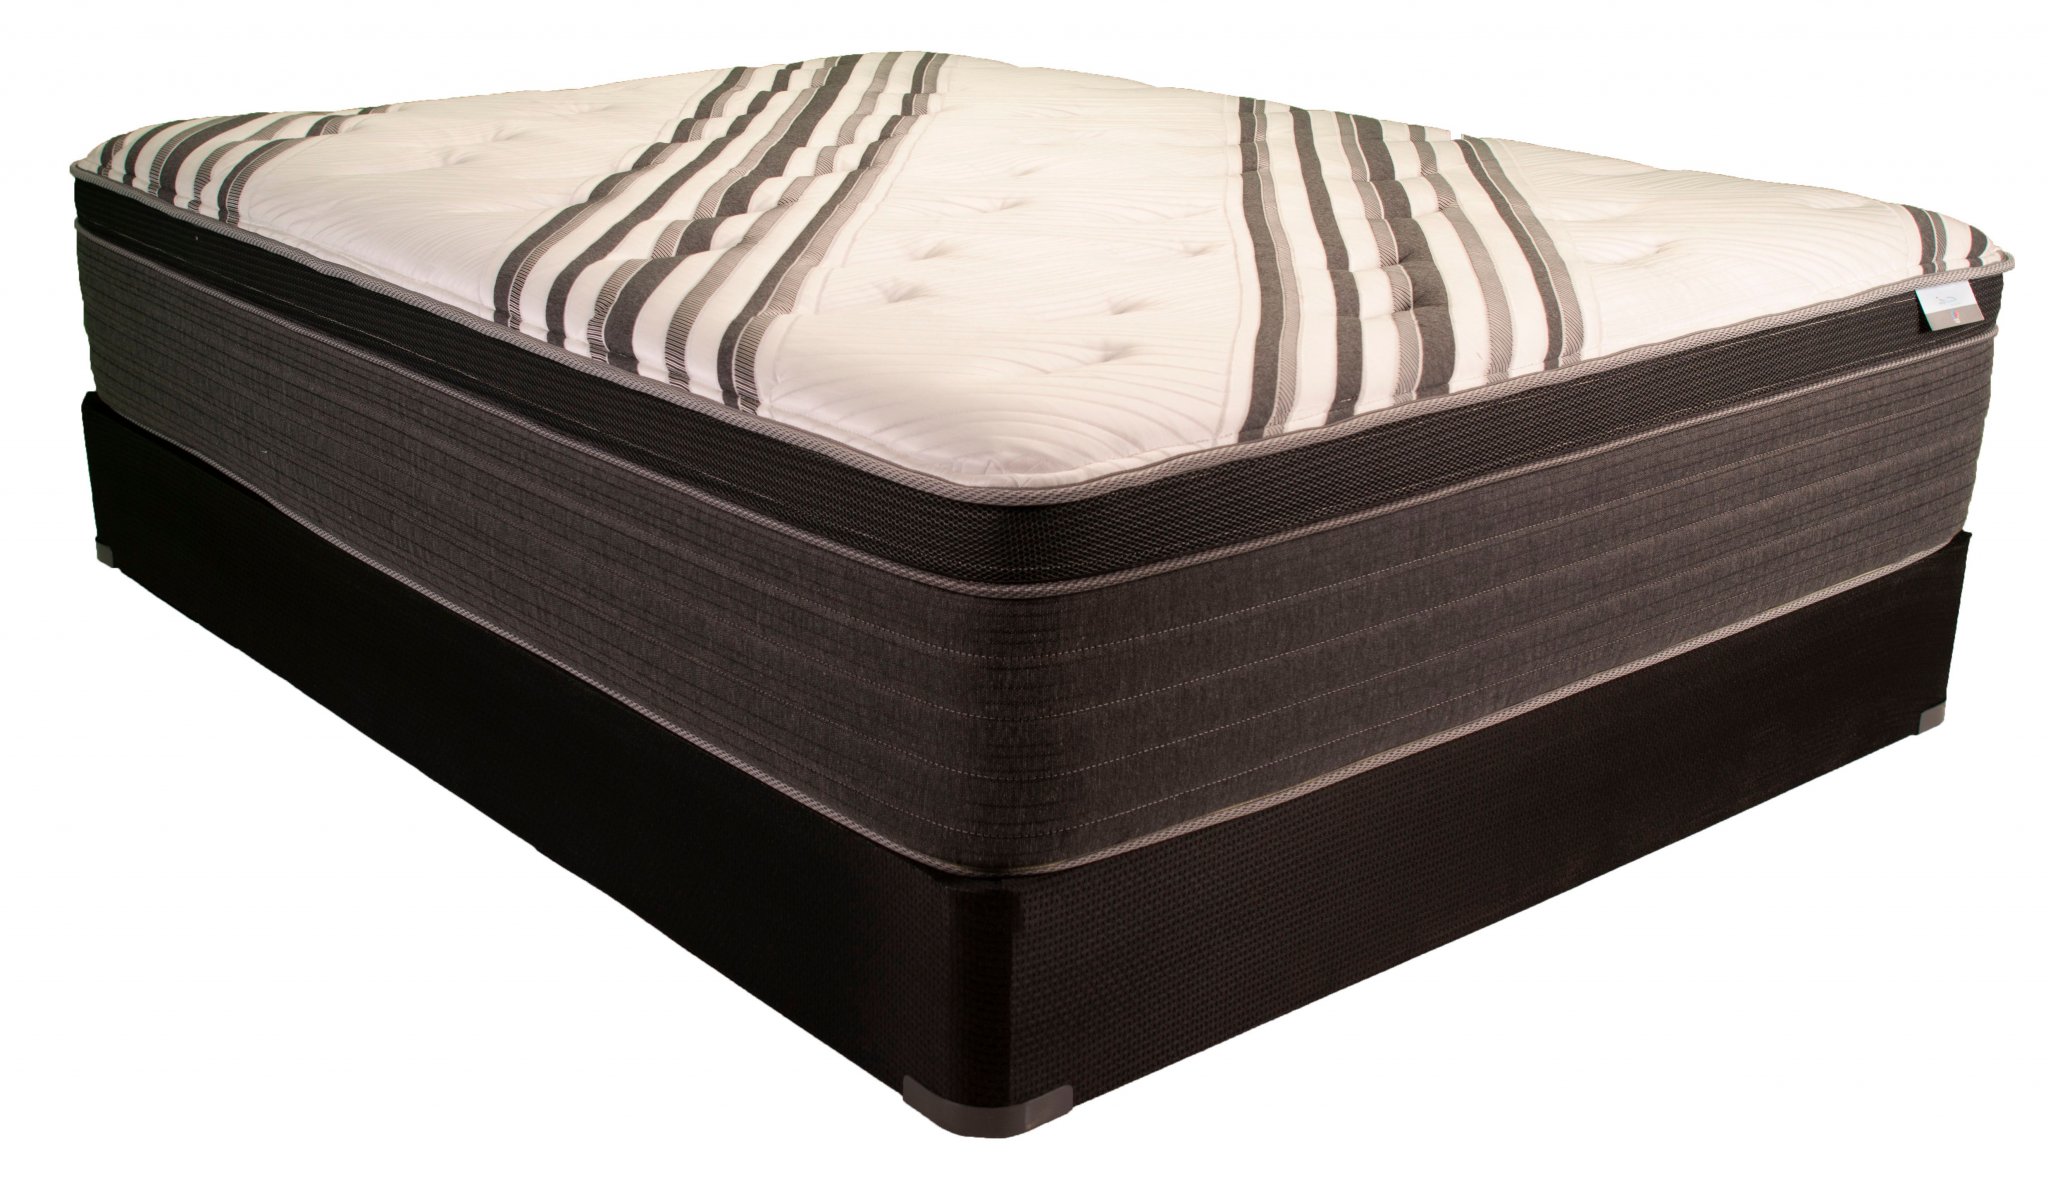 jamison pillow top mattress reviews